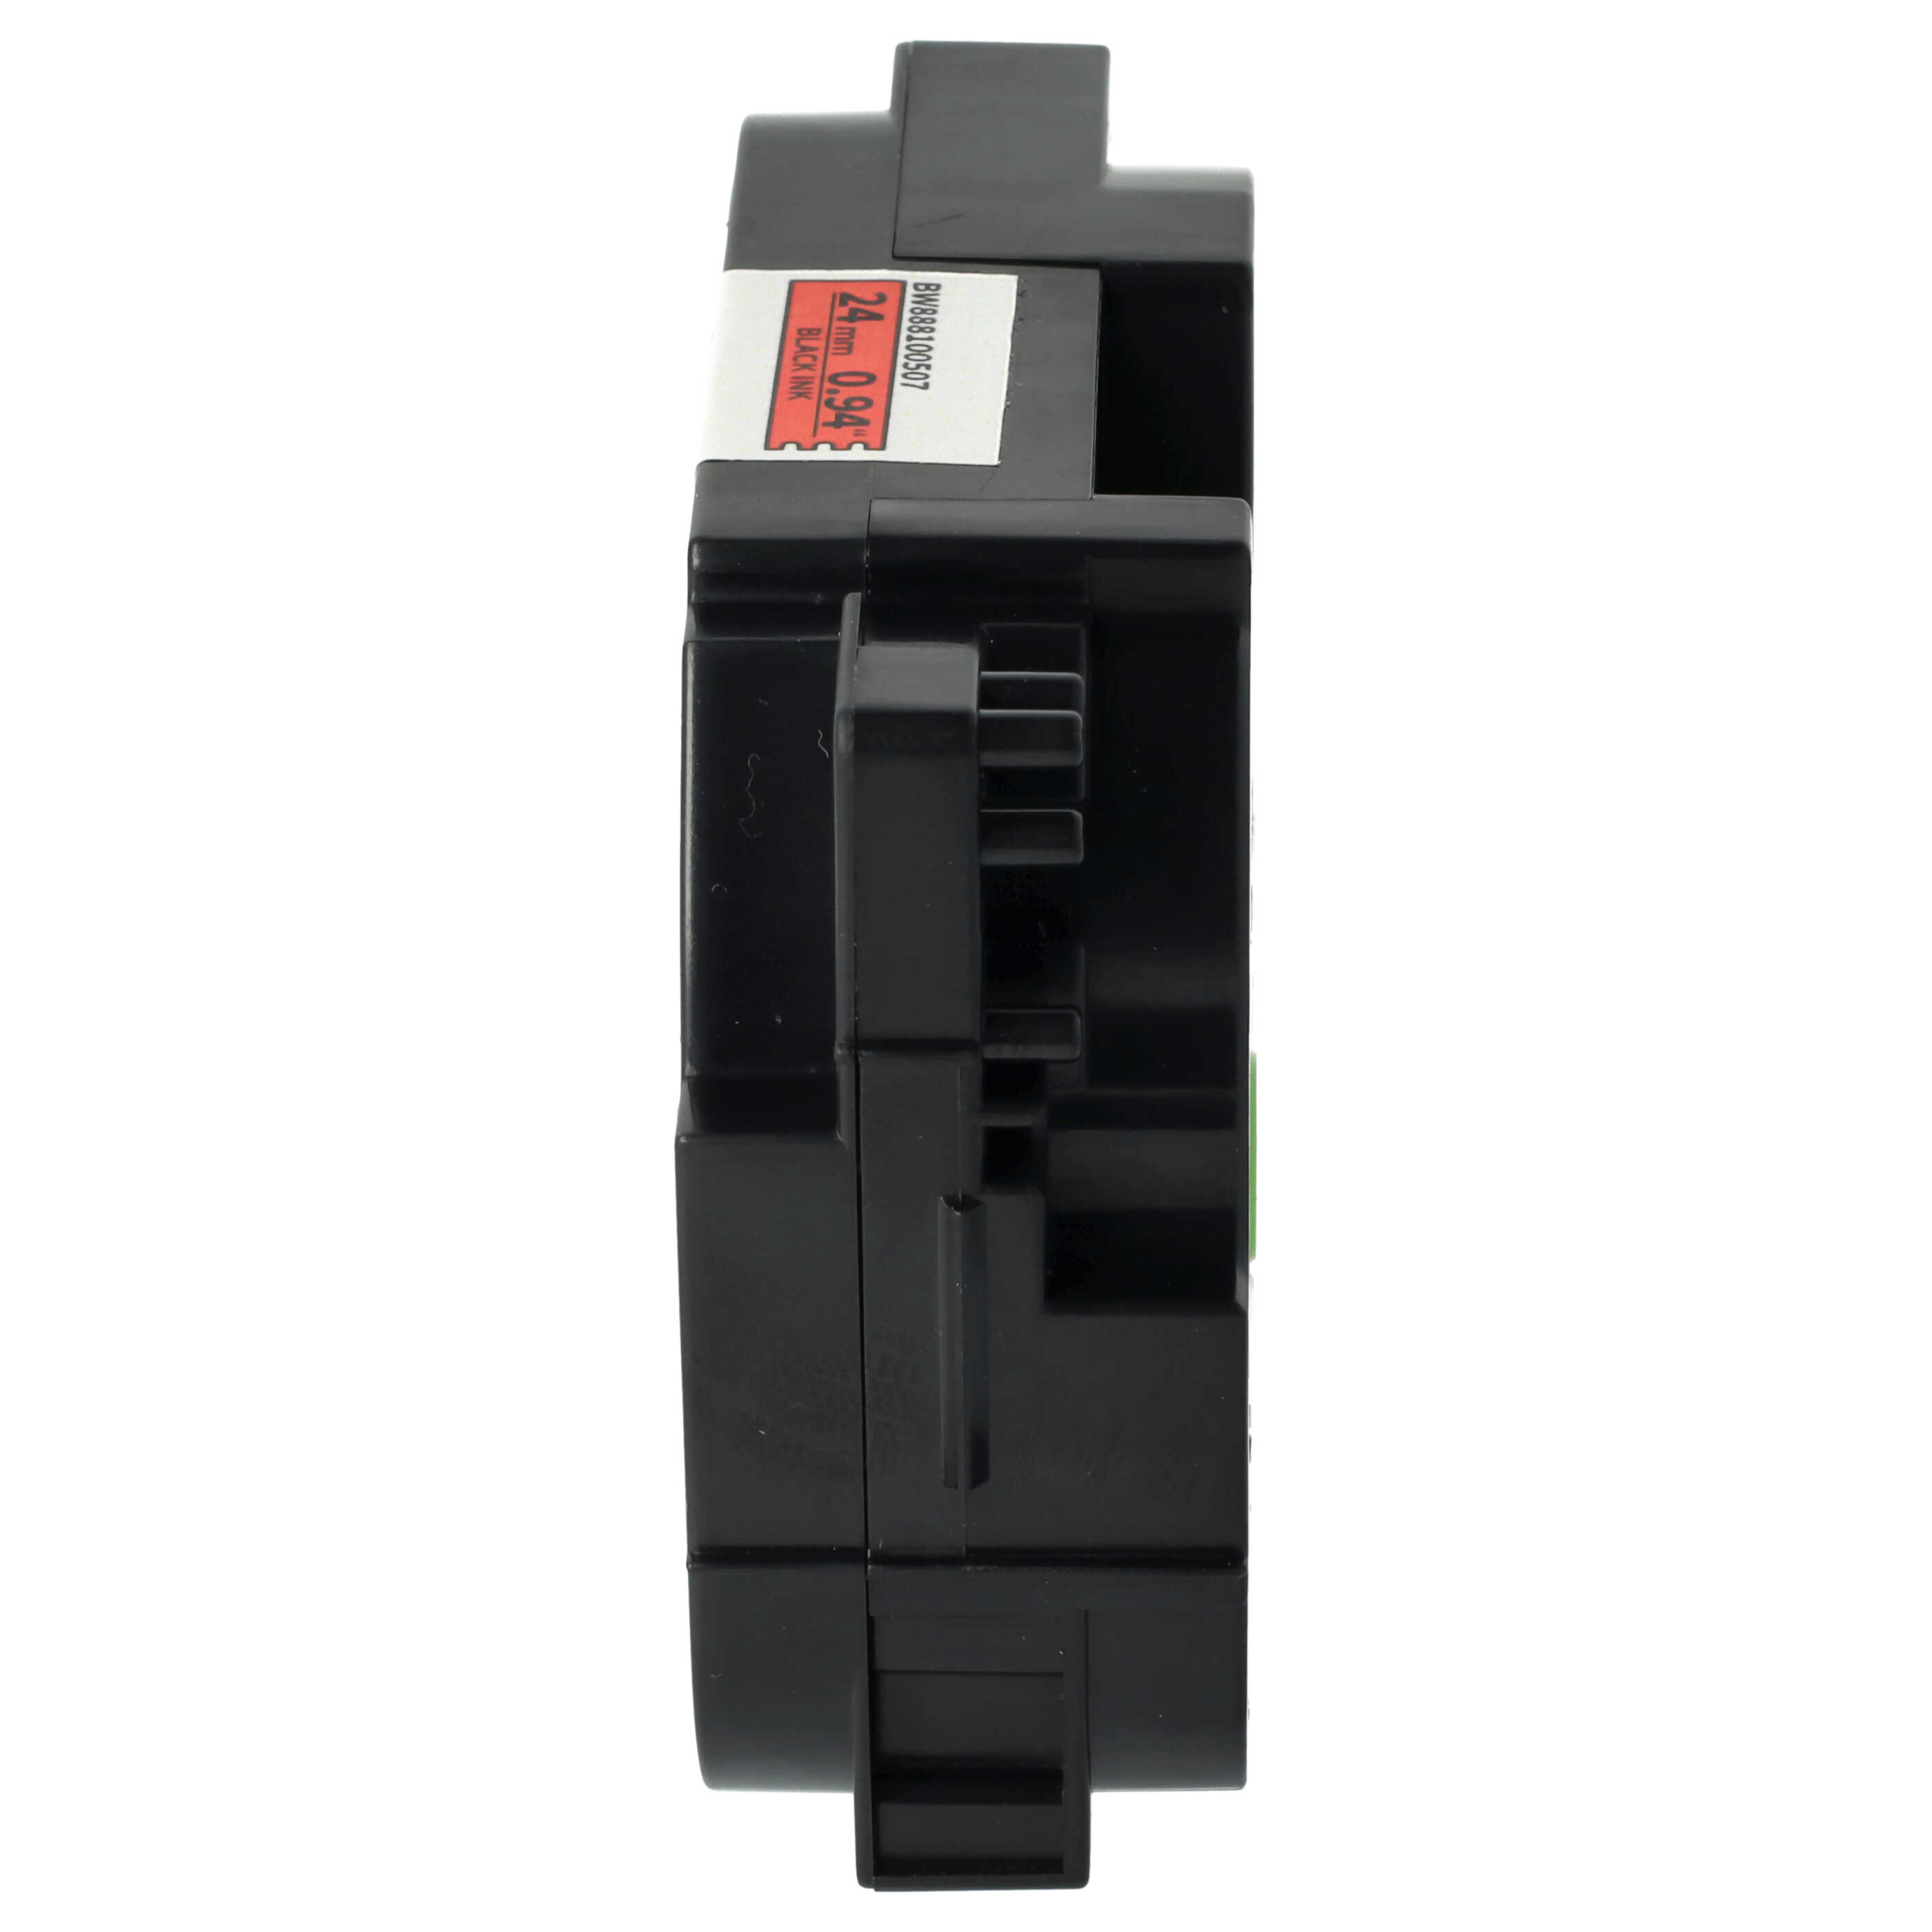 Cassette à ruban remplace Brother TZFX451, TZeFX451, TZE-FX451 - 24mm lettrage Noir ruban Rouge, souple